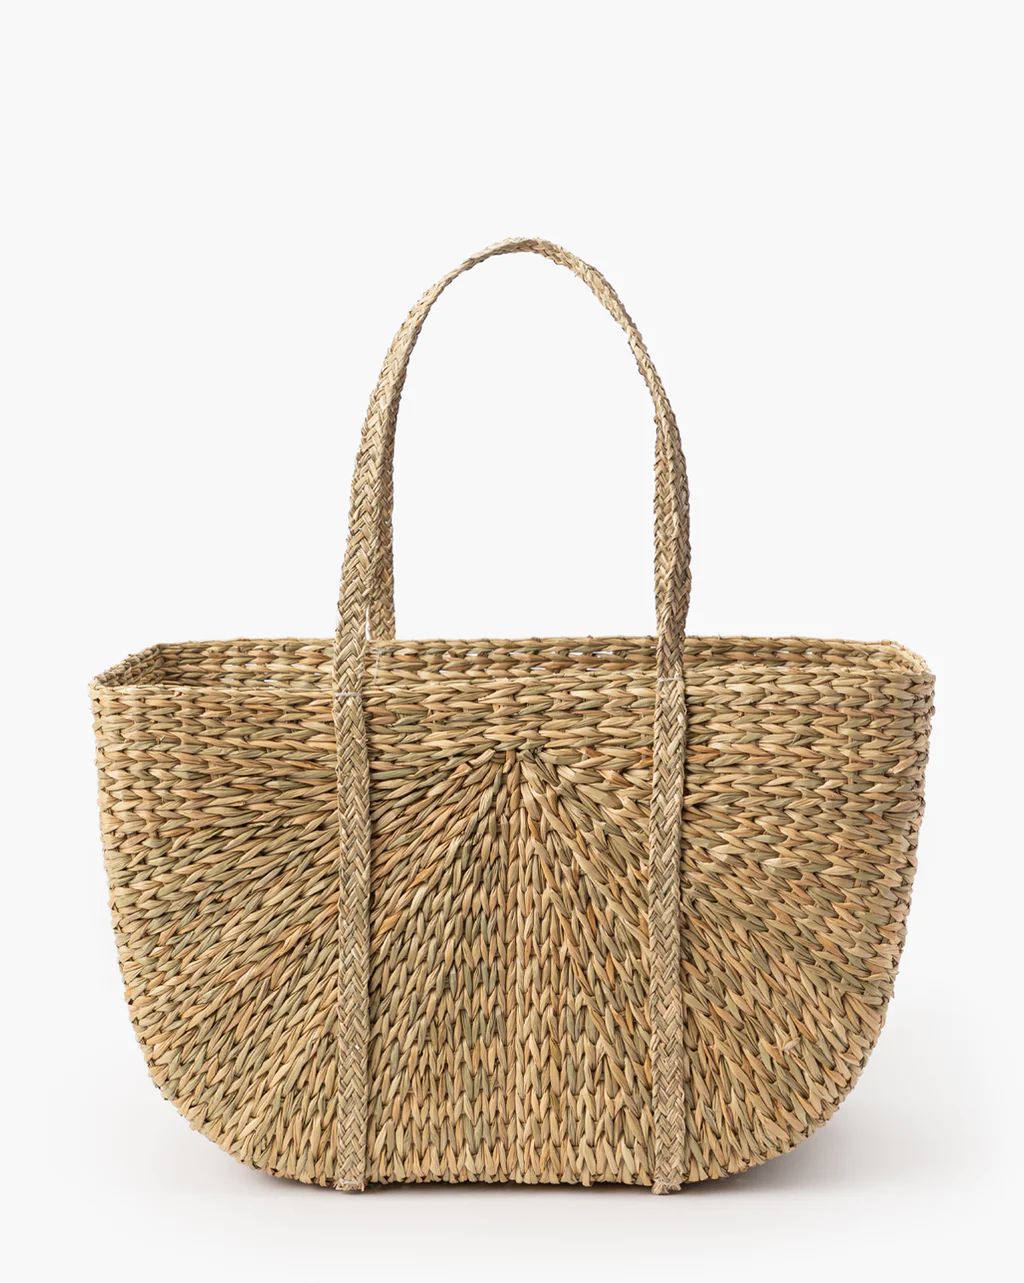 Seagrass Woven Bag | McGee & Co.